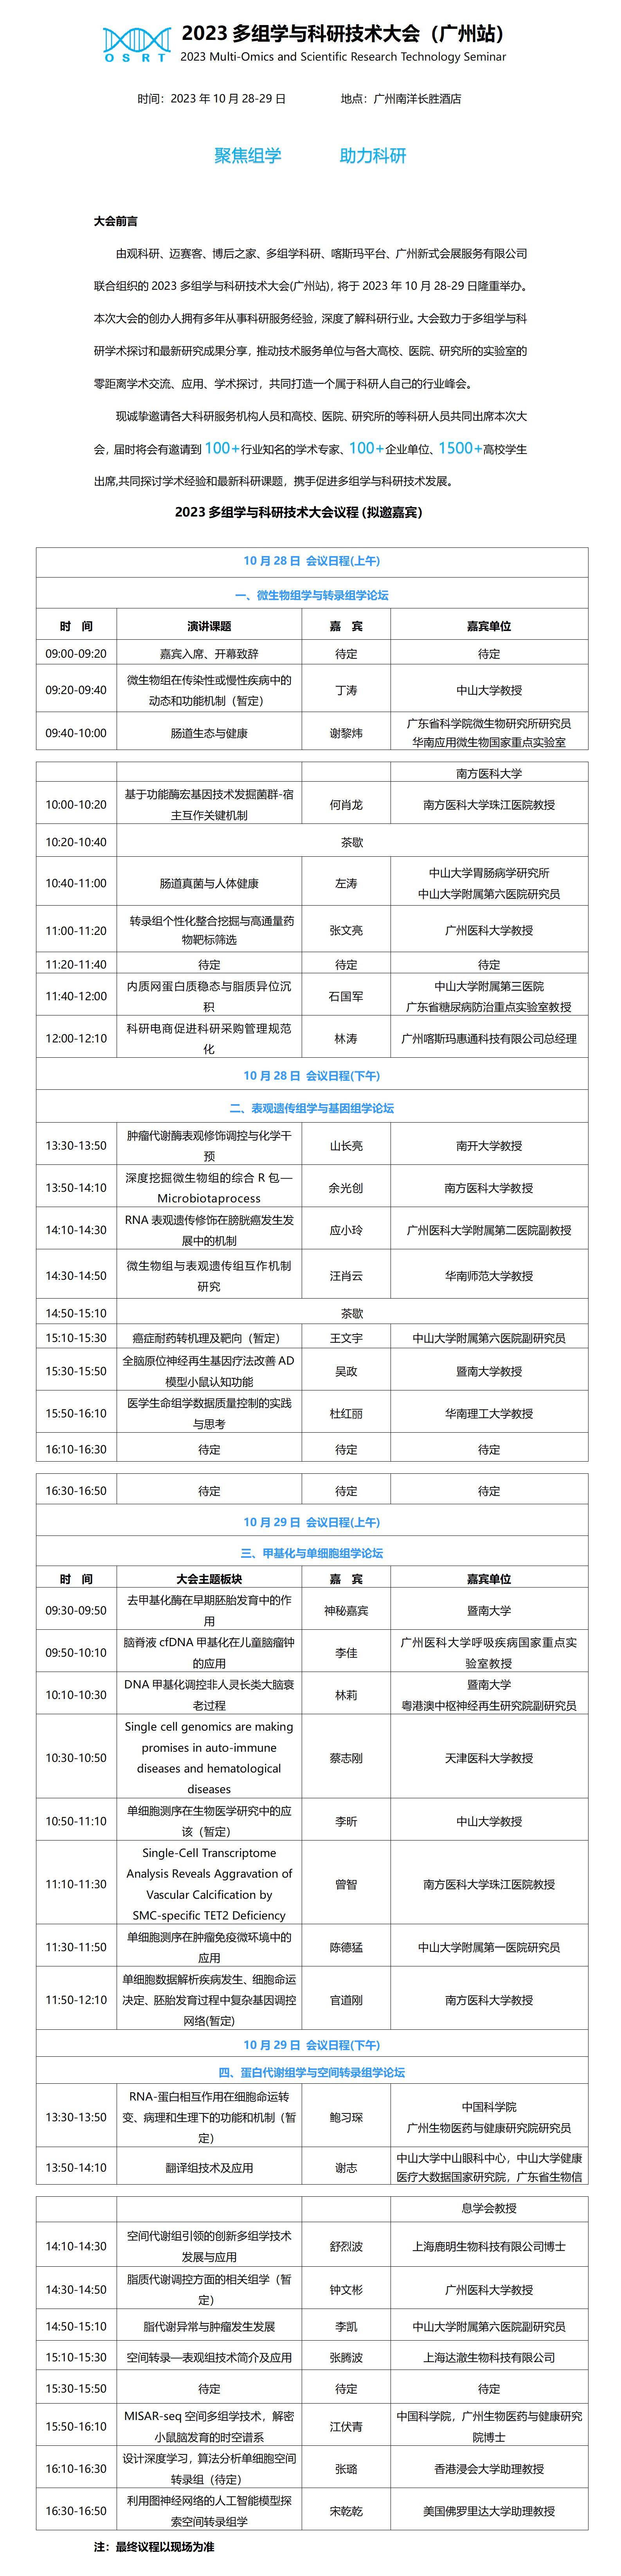 2023多组学与科研技术大会(广州站)邀请函9.14_01.jpg